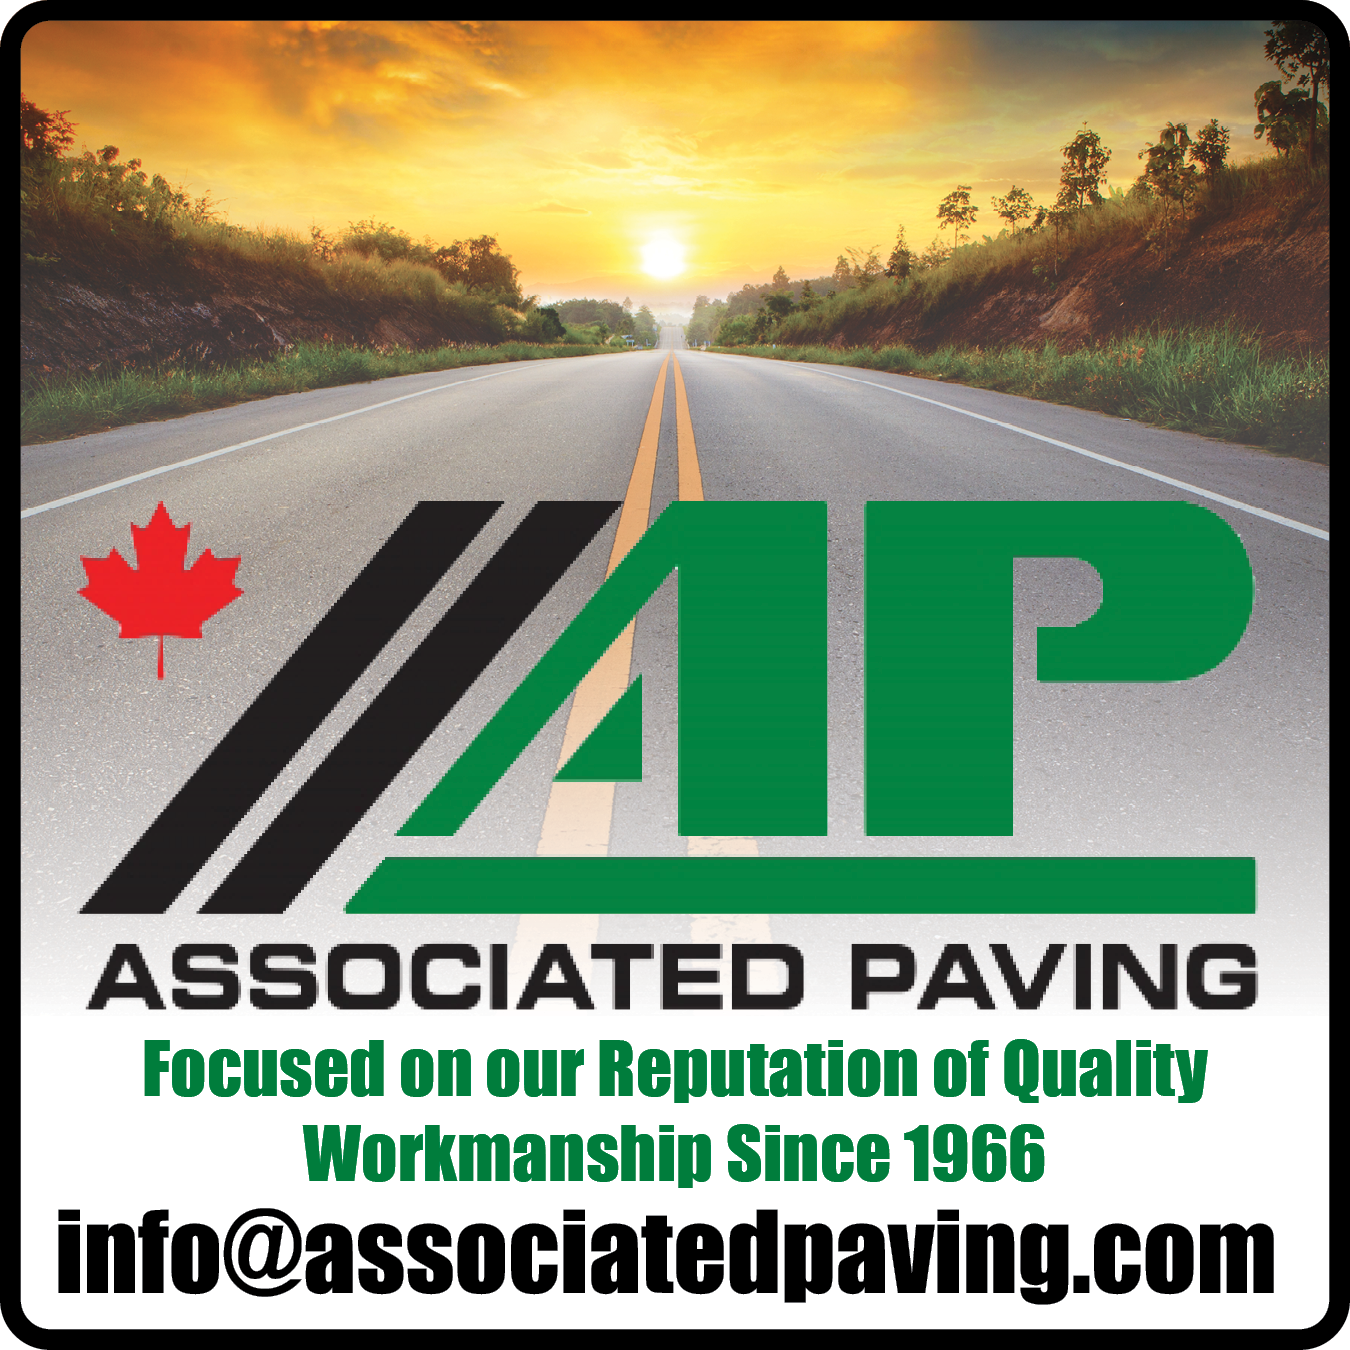 Associated Paving & Materials Ltd